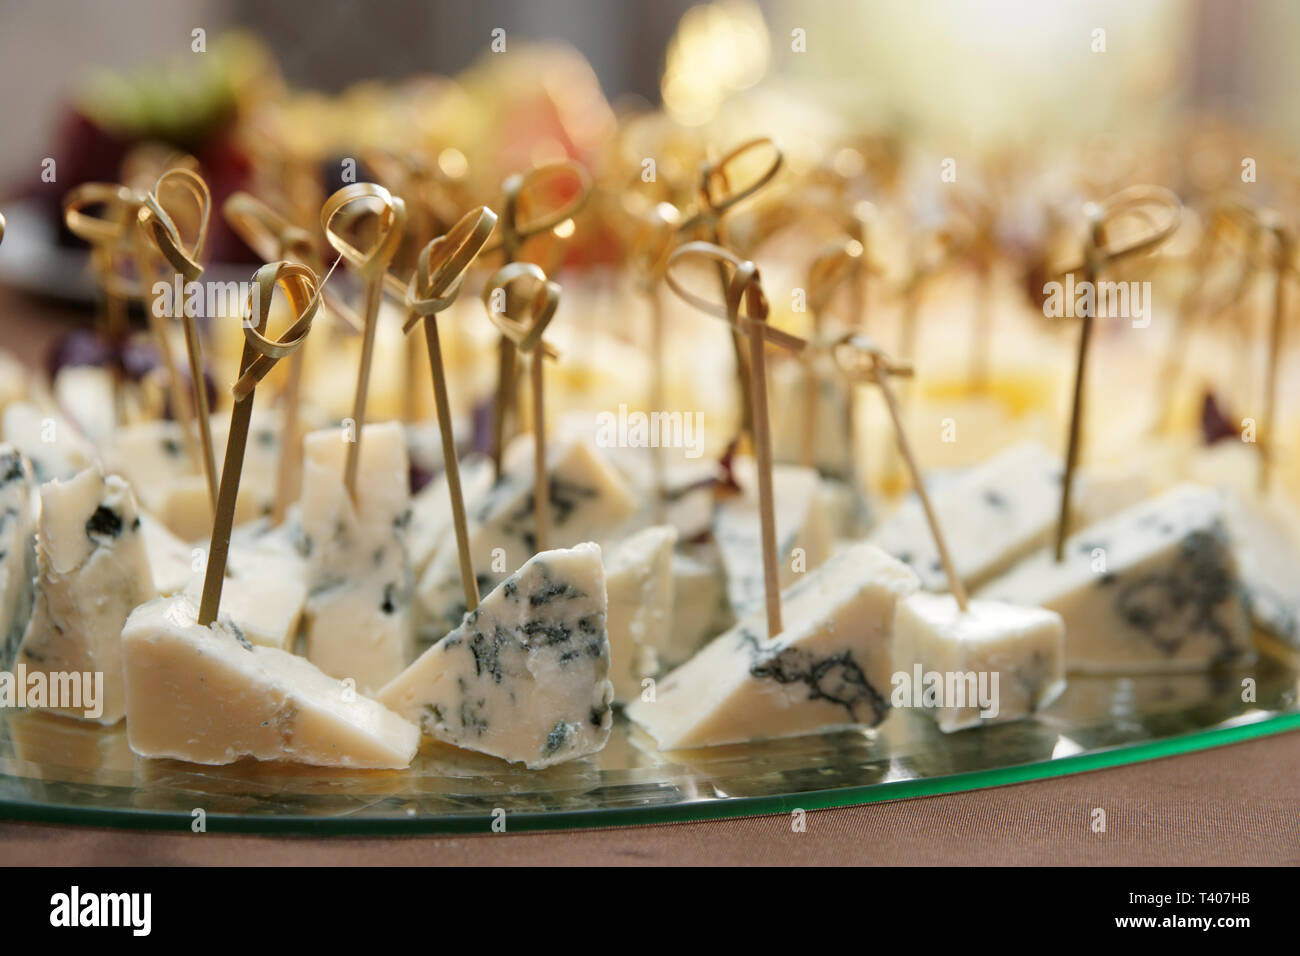 Varietà di formaggio sulla tavola da banchetto, close-up poco profonda profondità di messa a fuoco Foto Stock